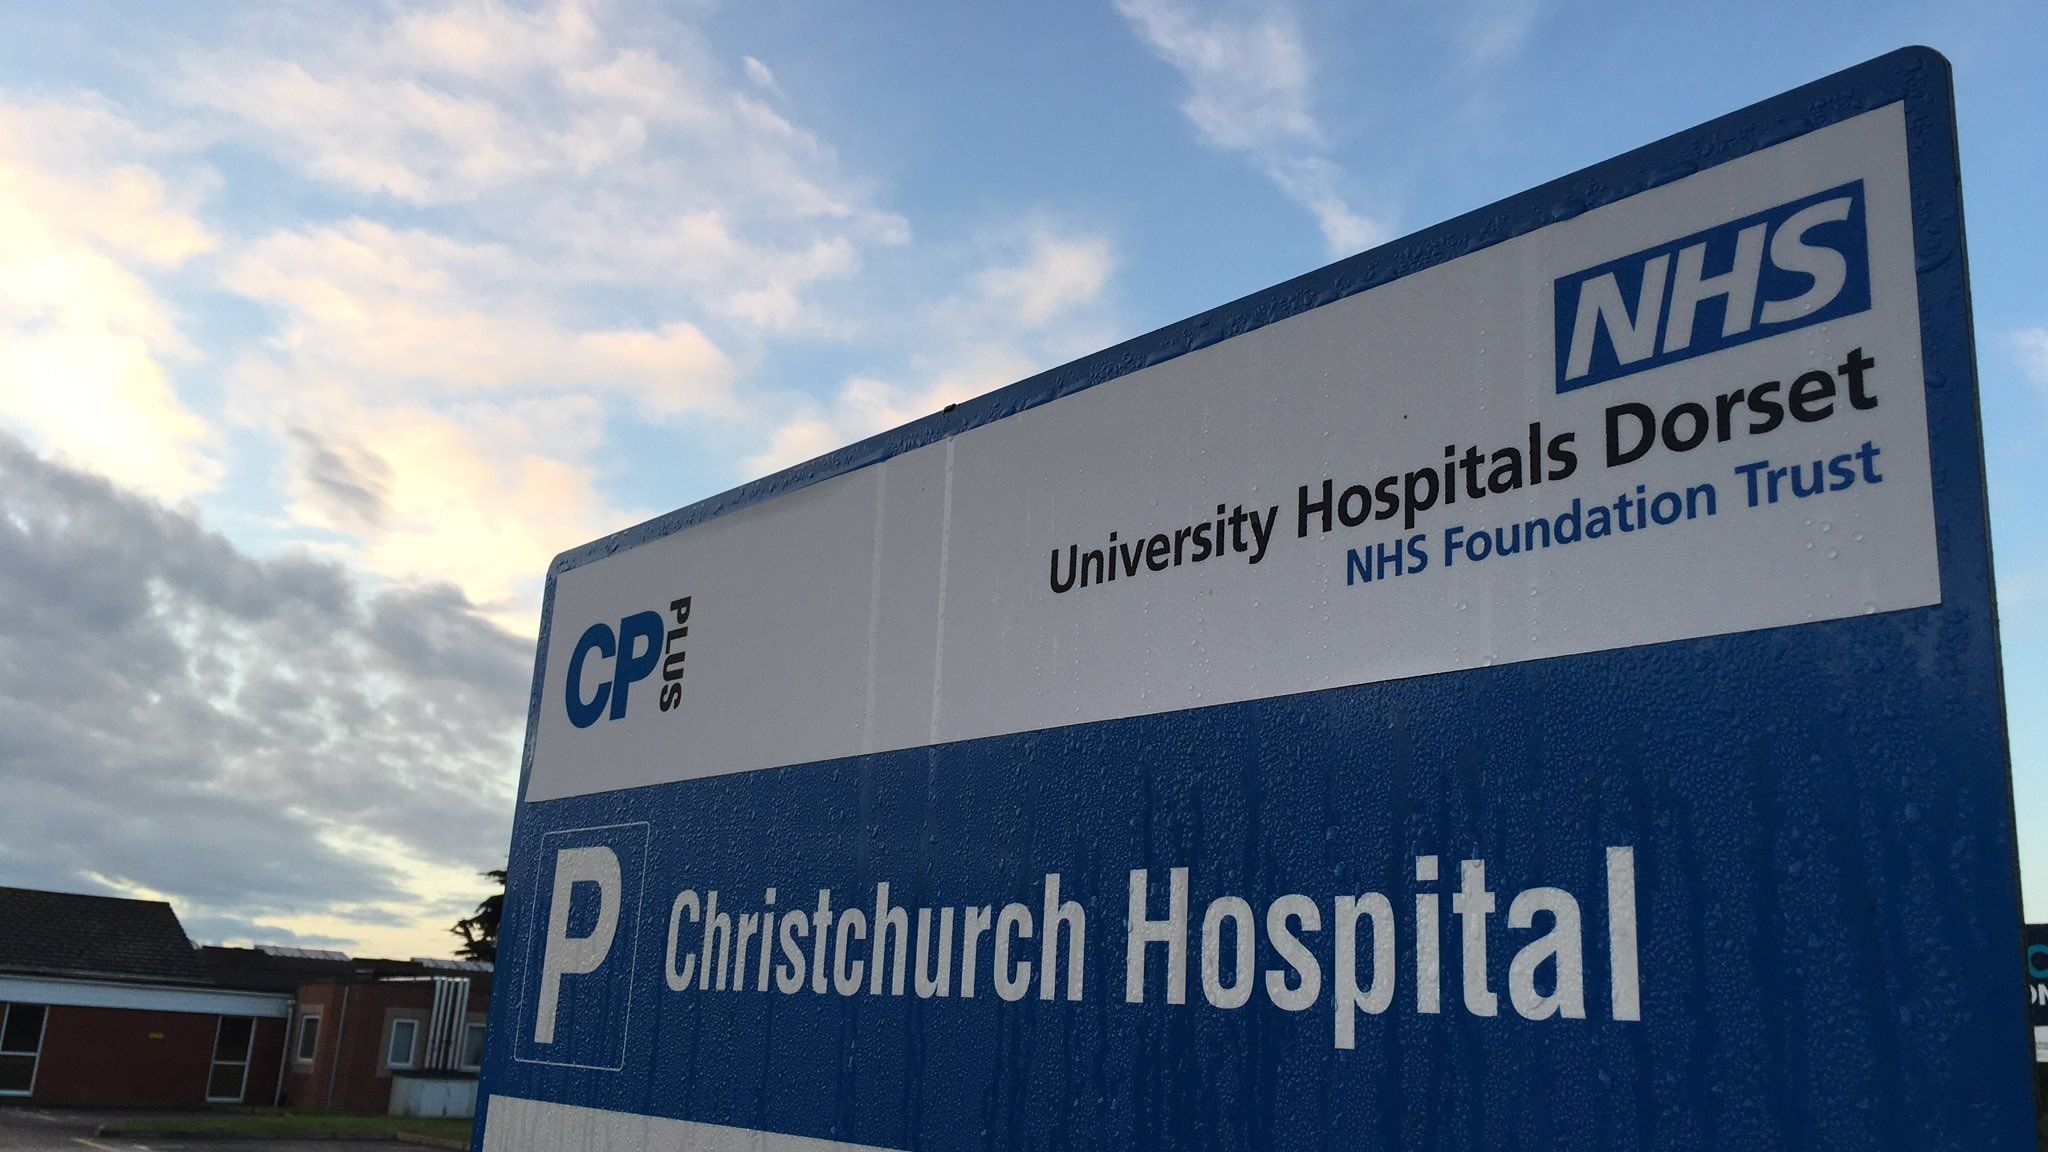 University Hospitals Dorset sign